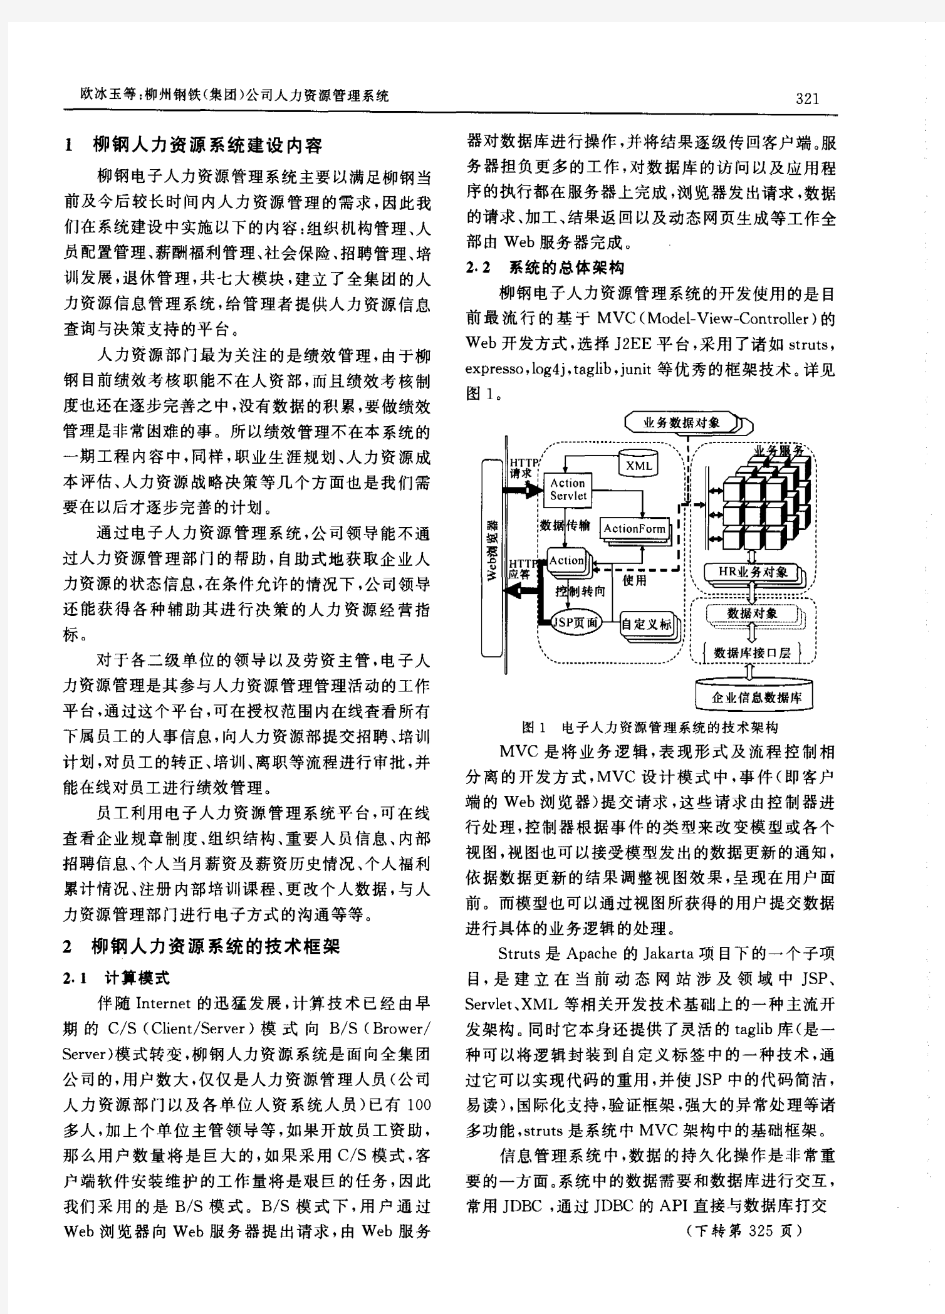 柳州钢铁(集团)公司人力资源管理系统